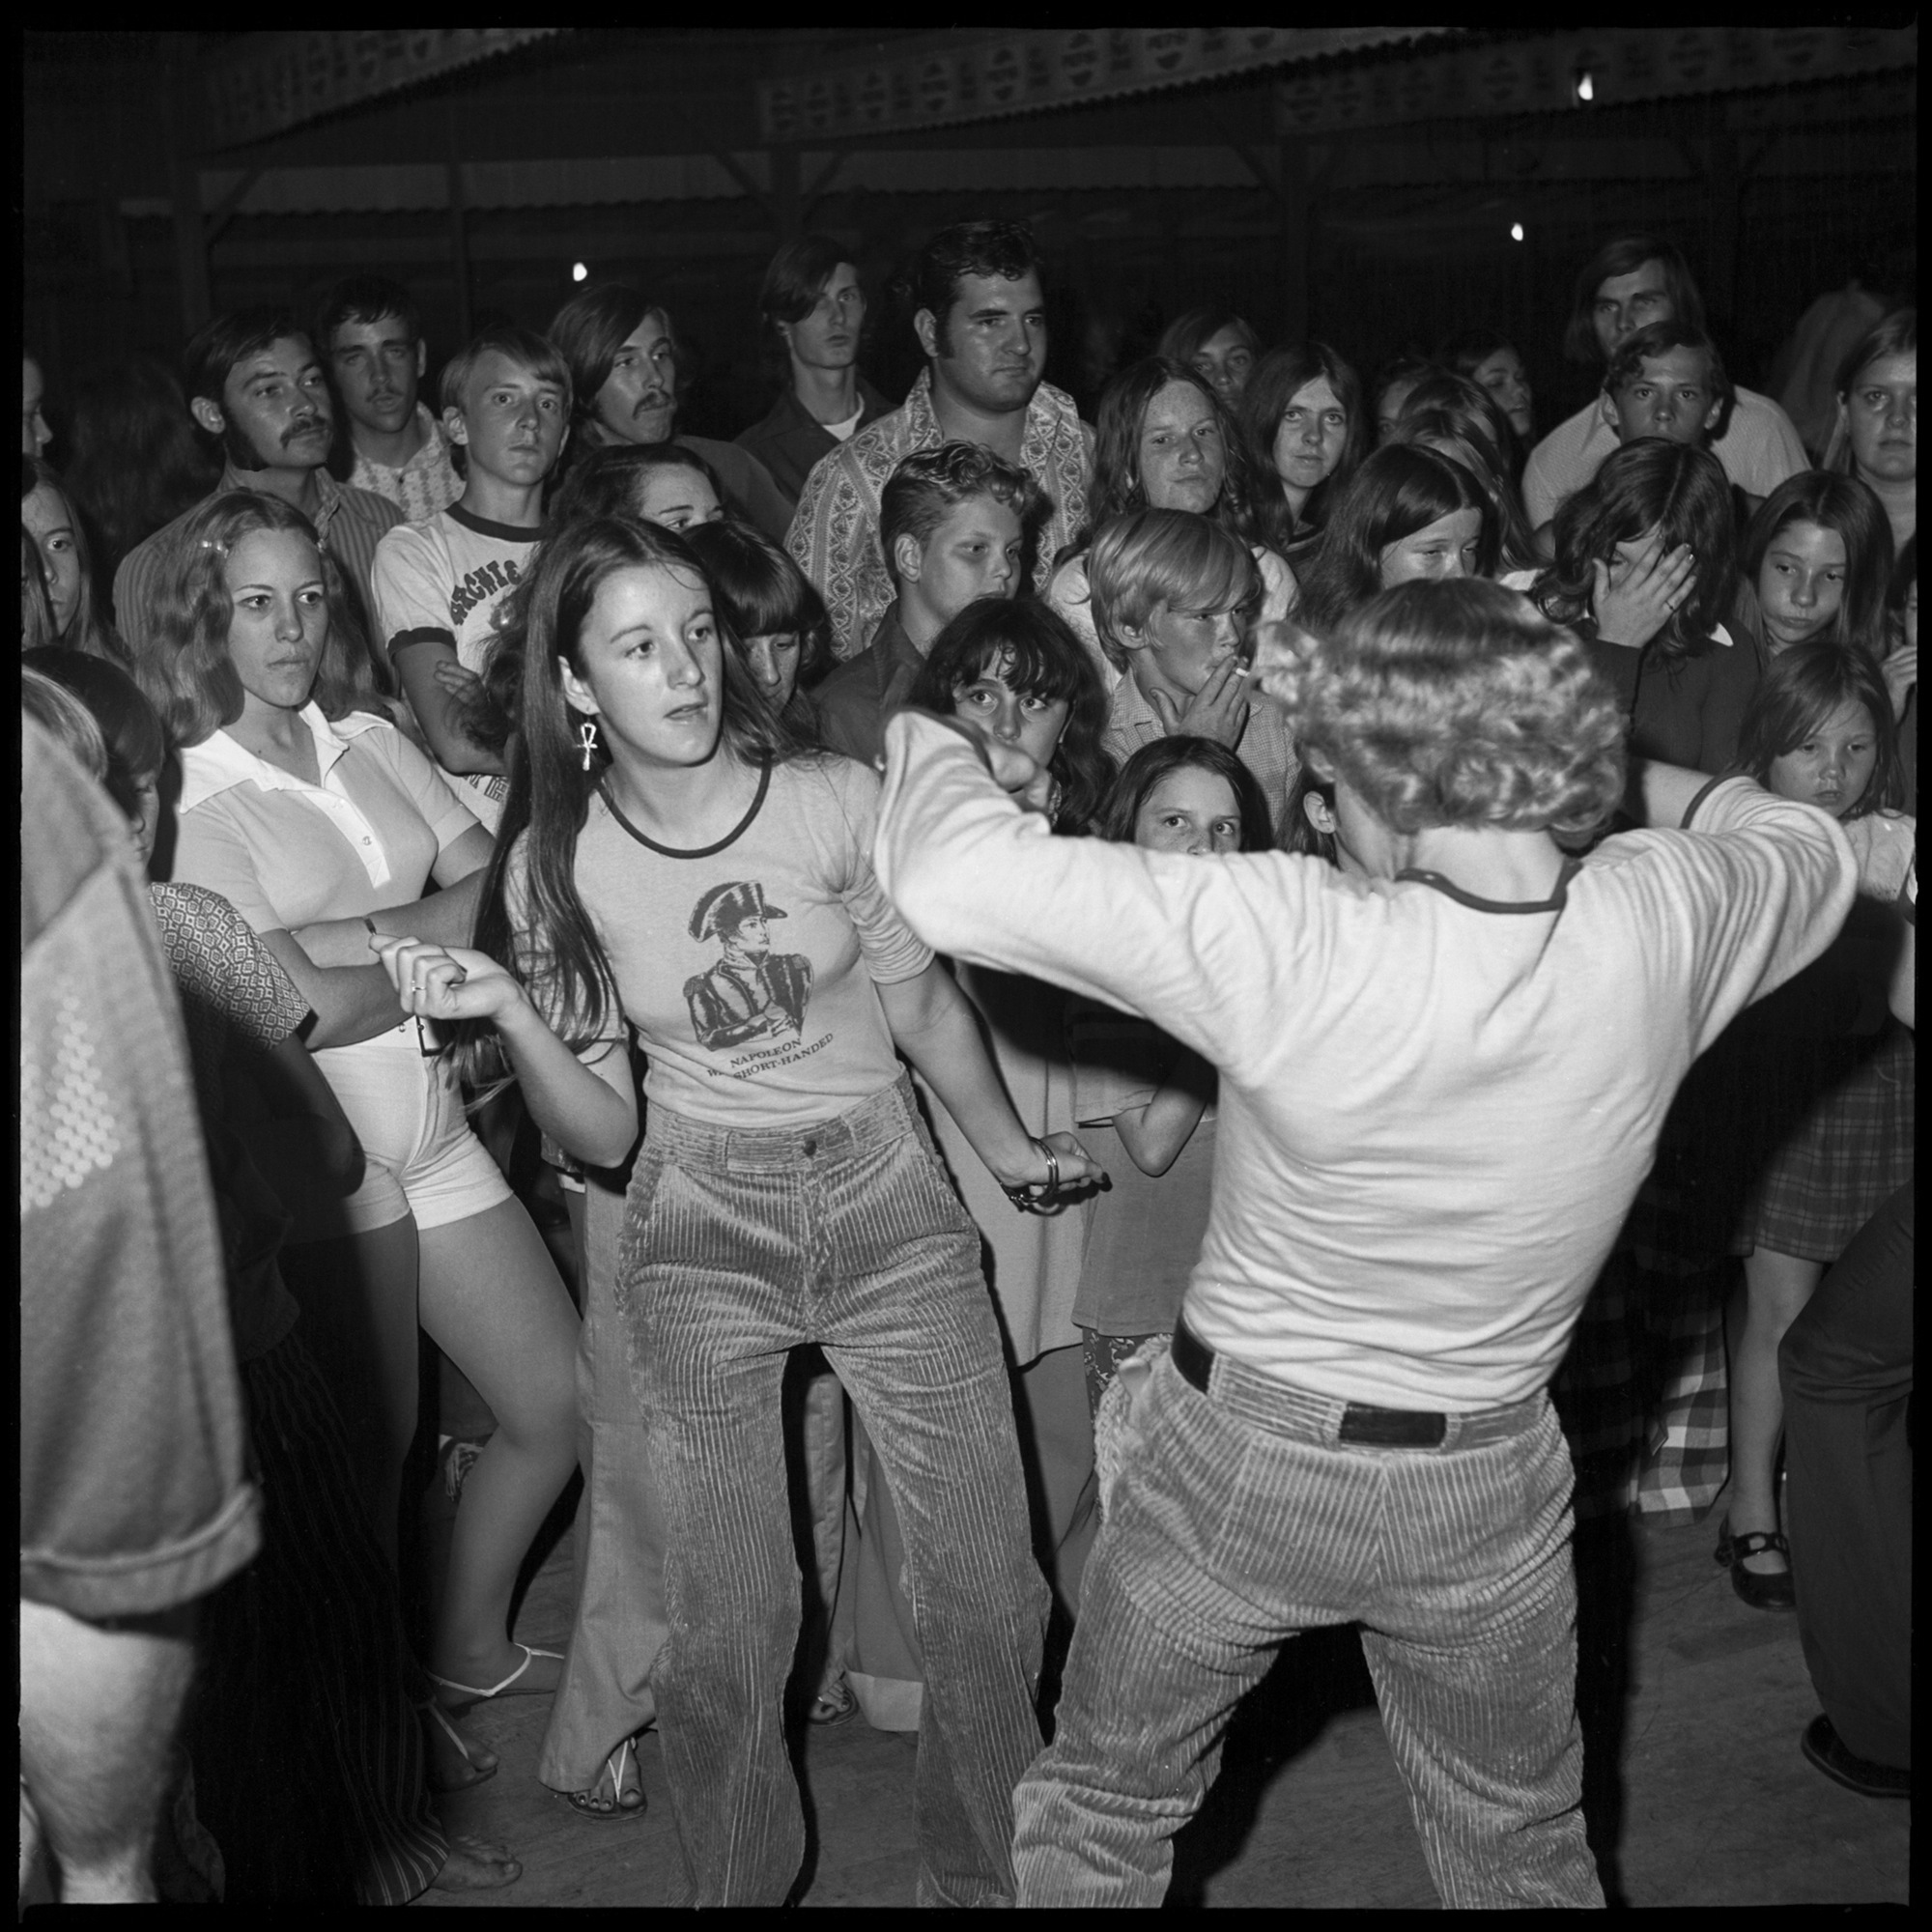 Дискотека семидесятых. Молодежь 80 годов. Молодёжь 80х дискотека. Девушка на дискотеке. Американская молодежь 80-х.